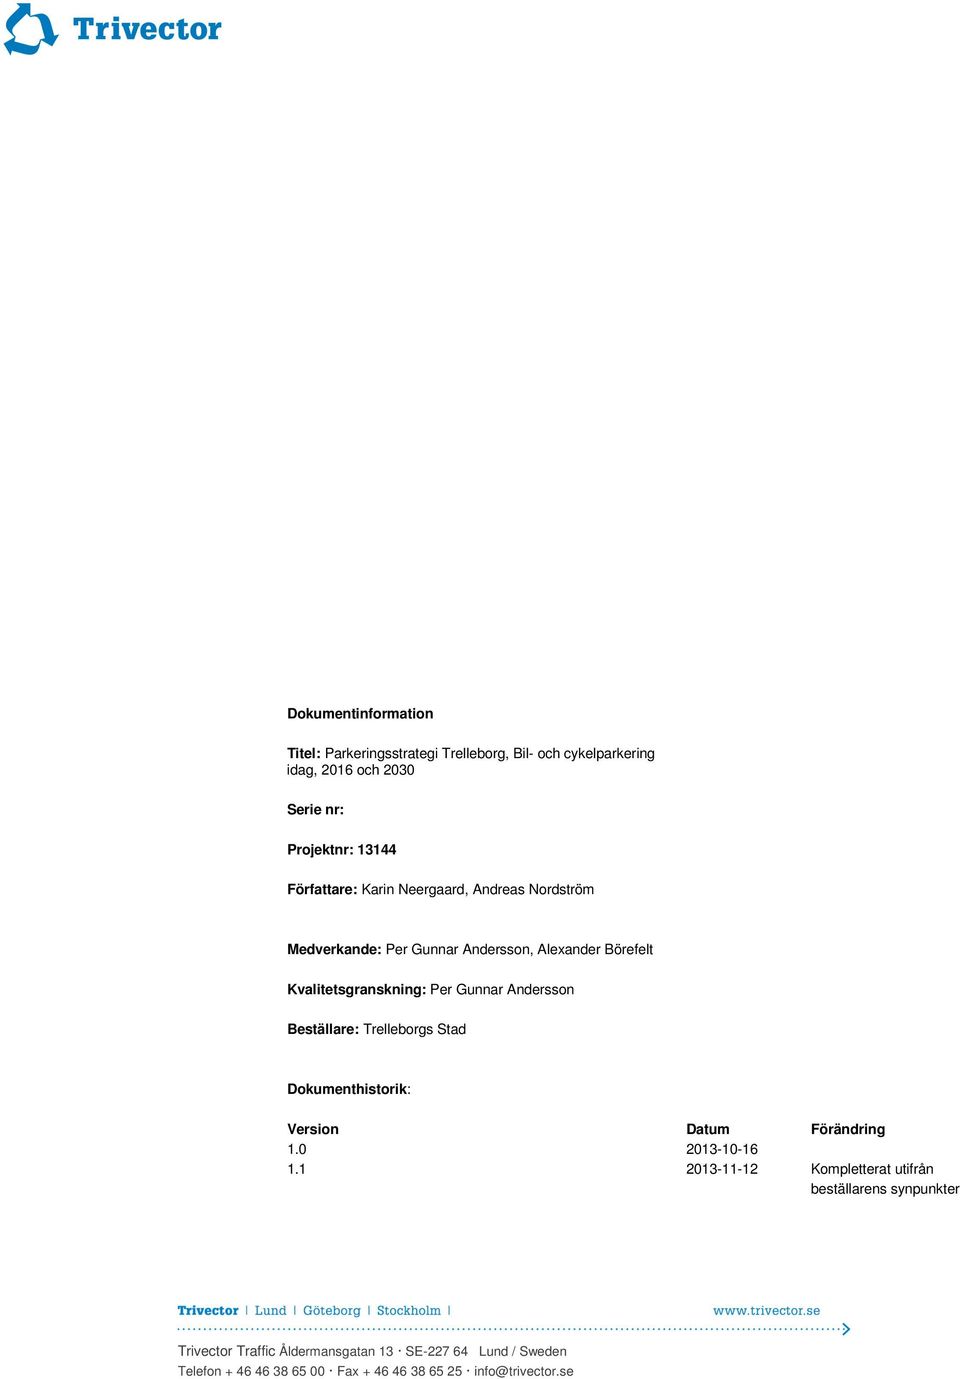 Gunnar Andersson Beställare: Trelleborgs Stad Dokumenthistorik: Version Datum Förändring 1.0 2013-10-16 1.